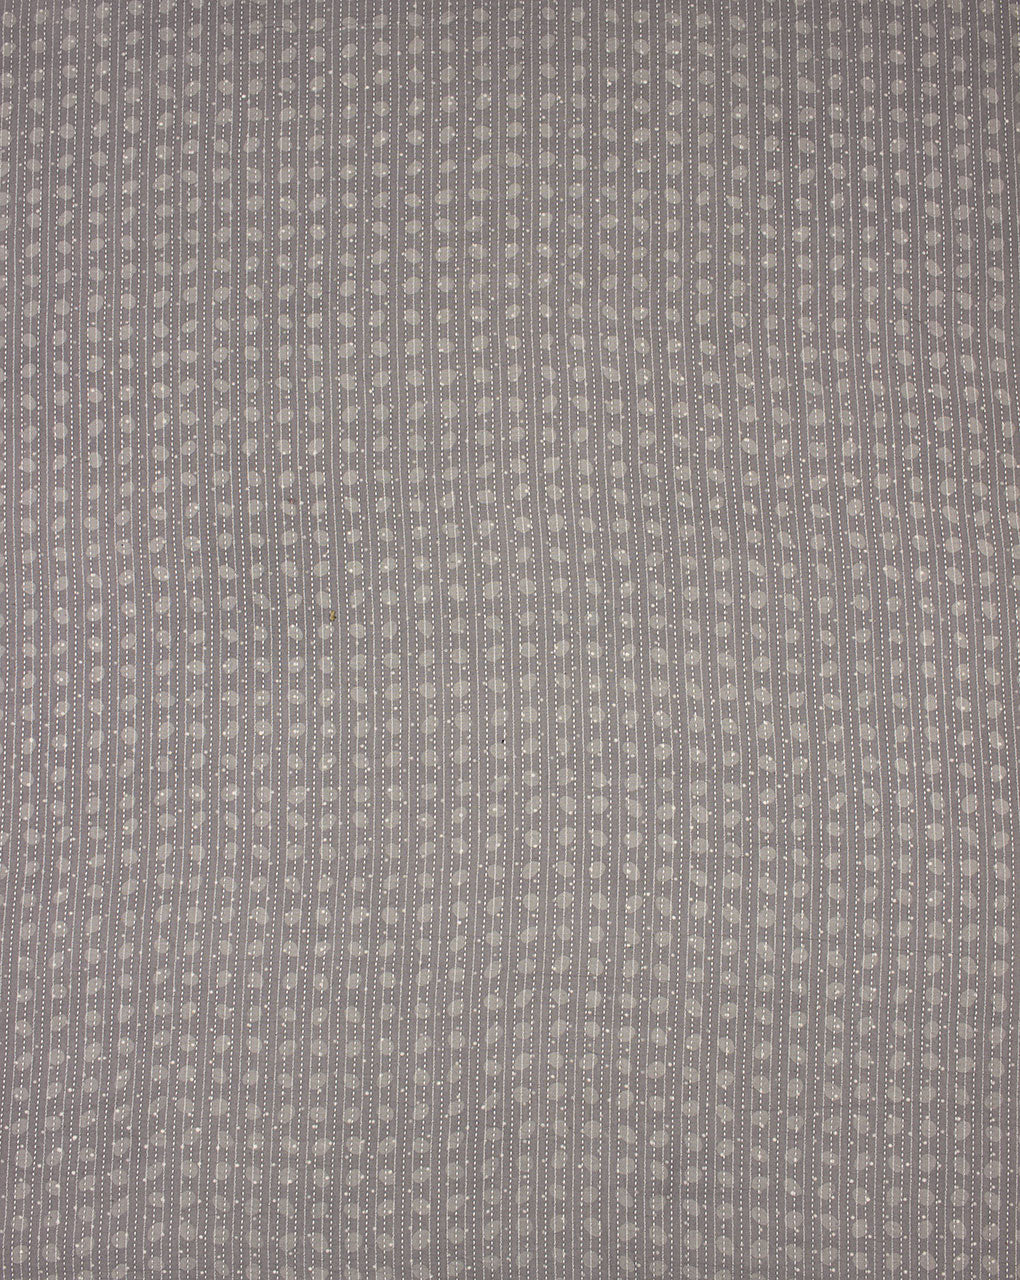 Azo-Free Certified Akola Hand Block Kantha Cotton Fabric - Fabriclore.com